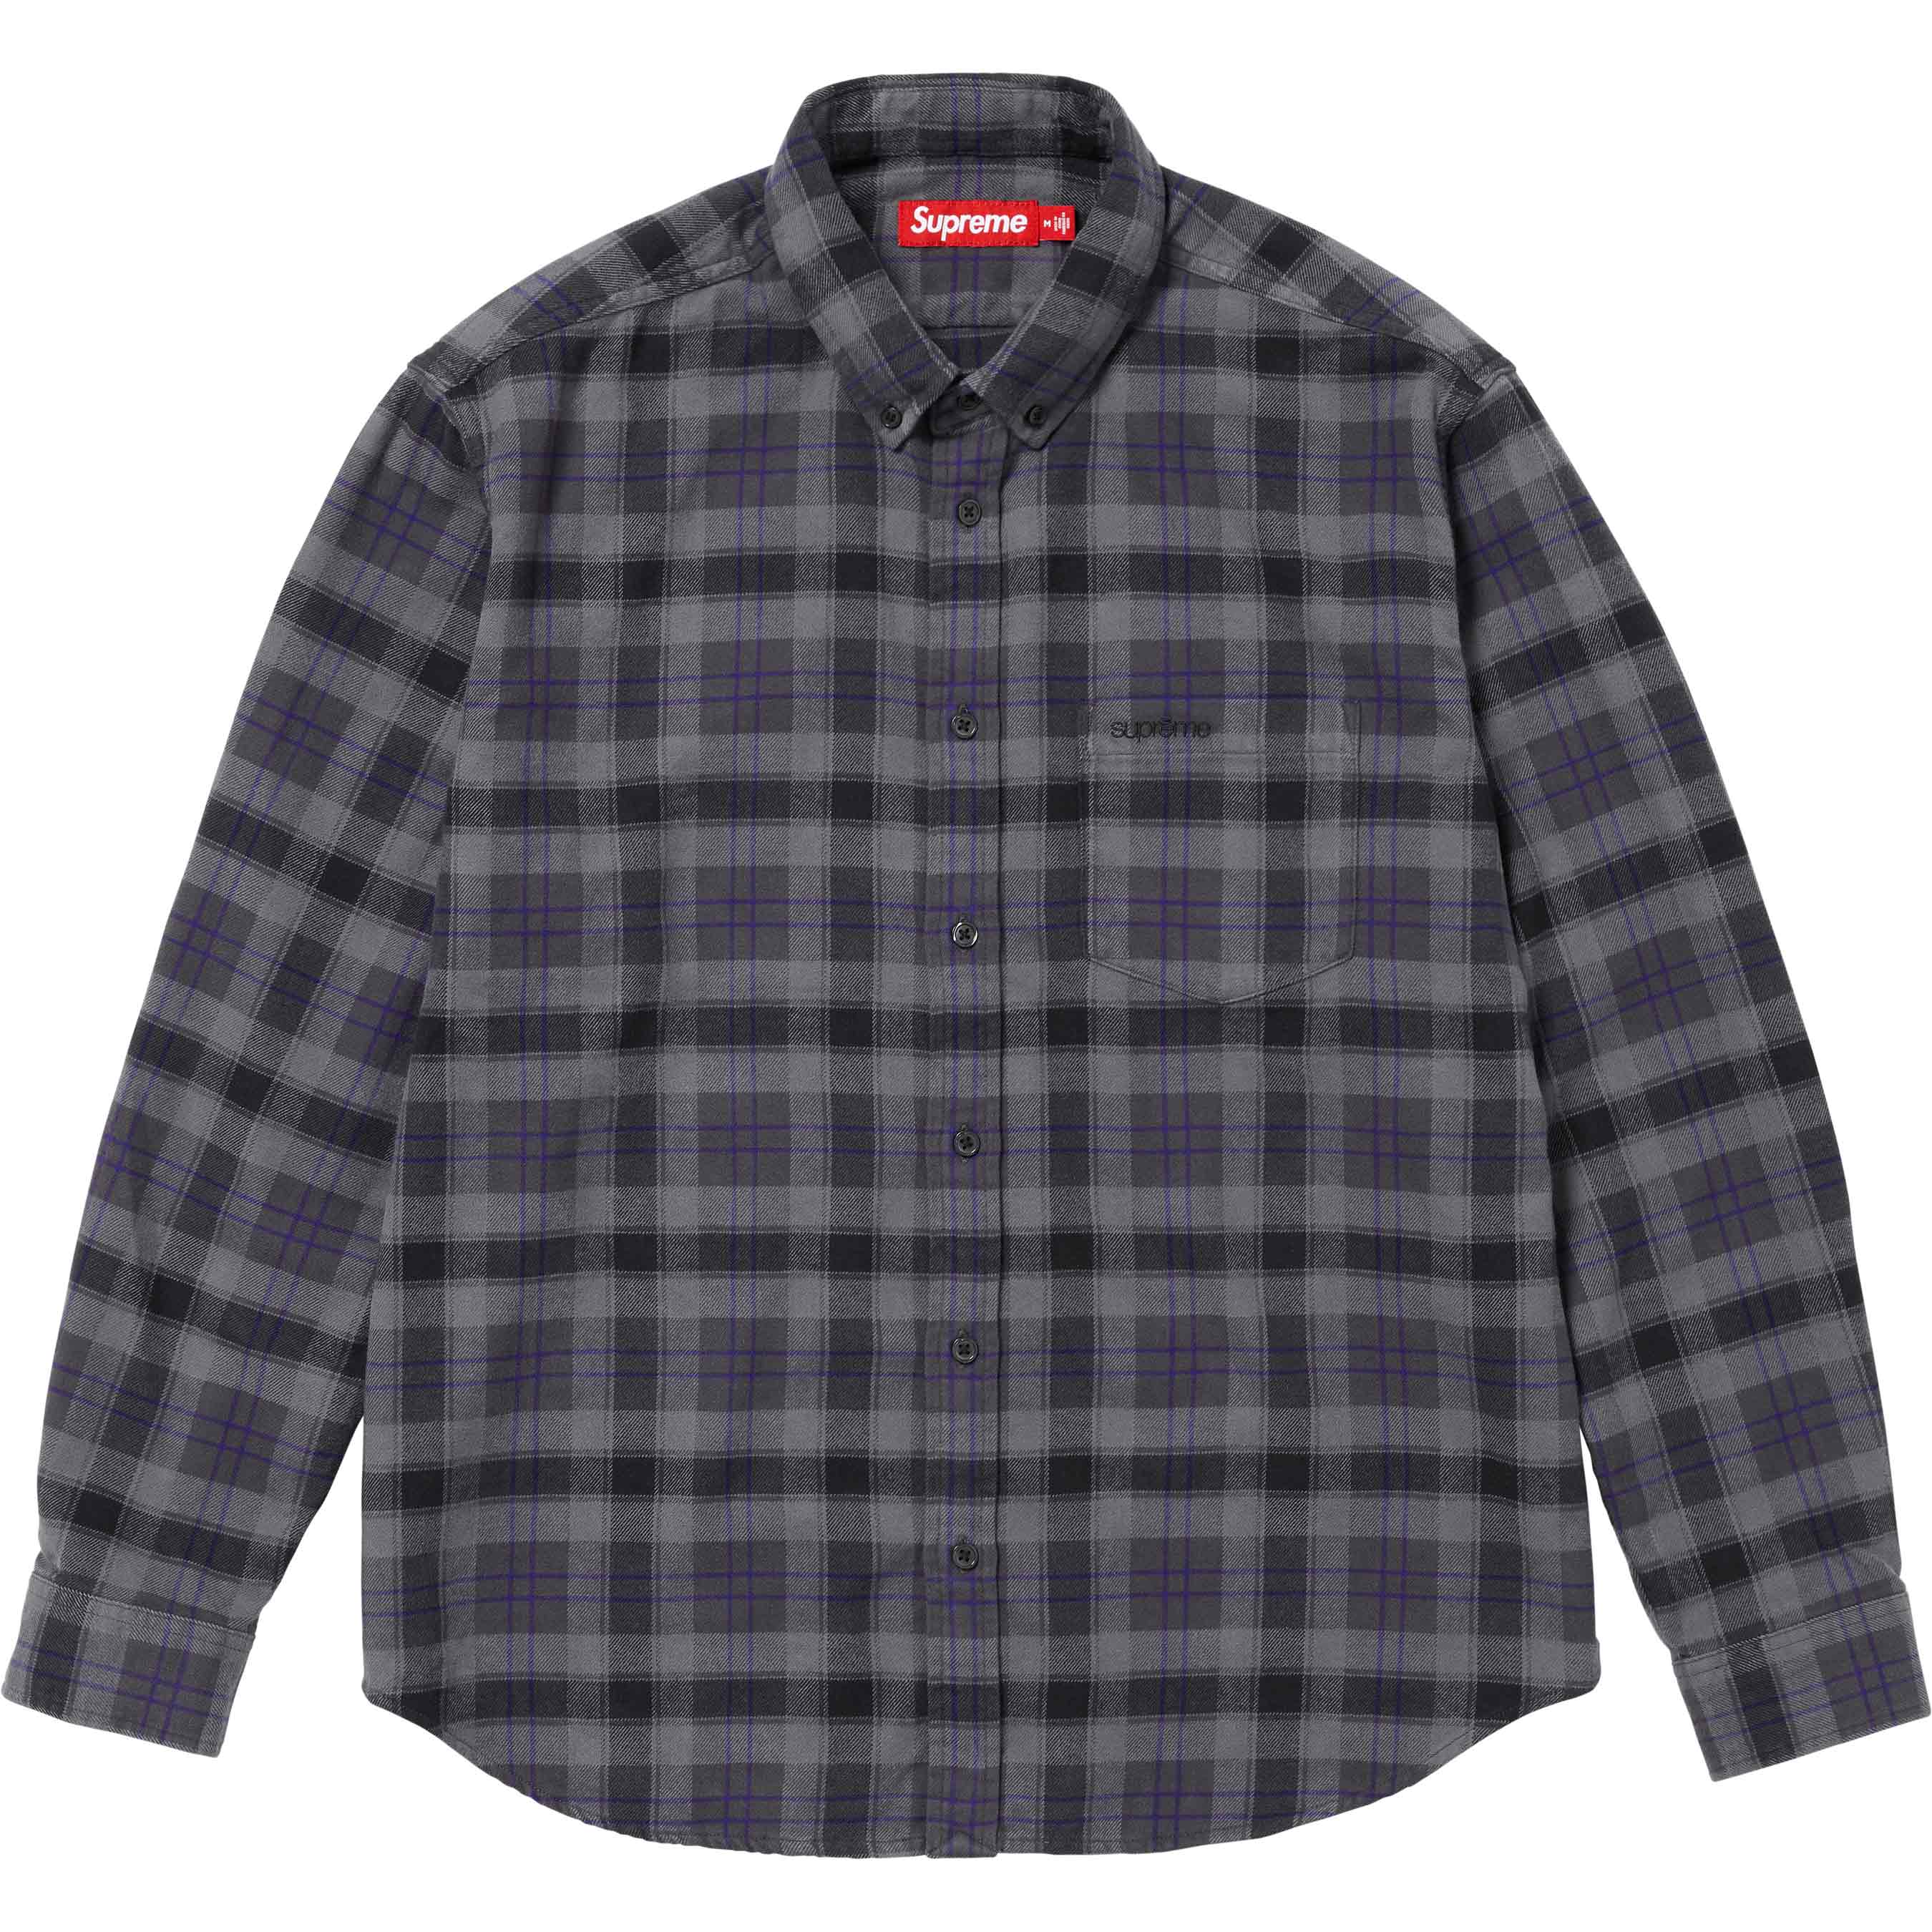 【在庫あ新品】supreme Tartan Flannel Shirt Sサイズ シャツ